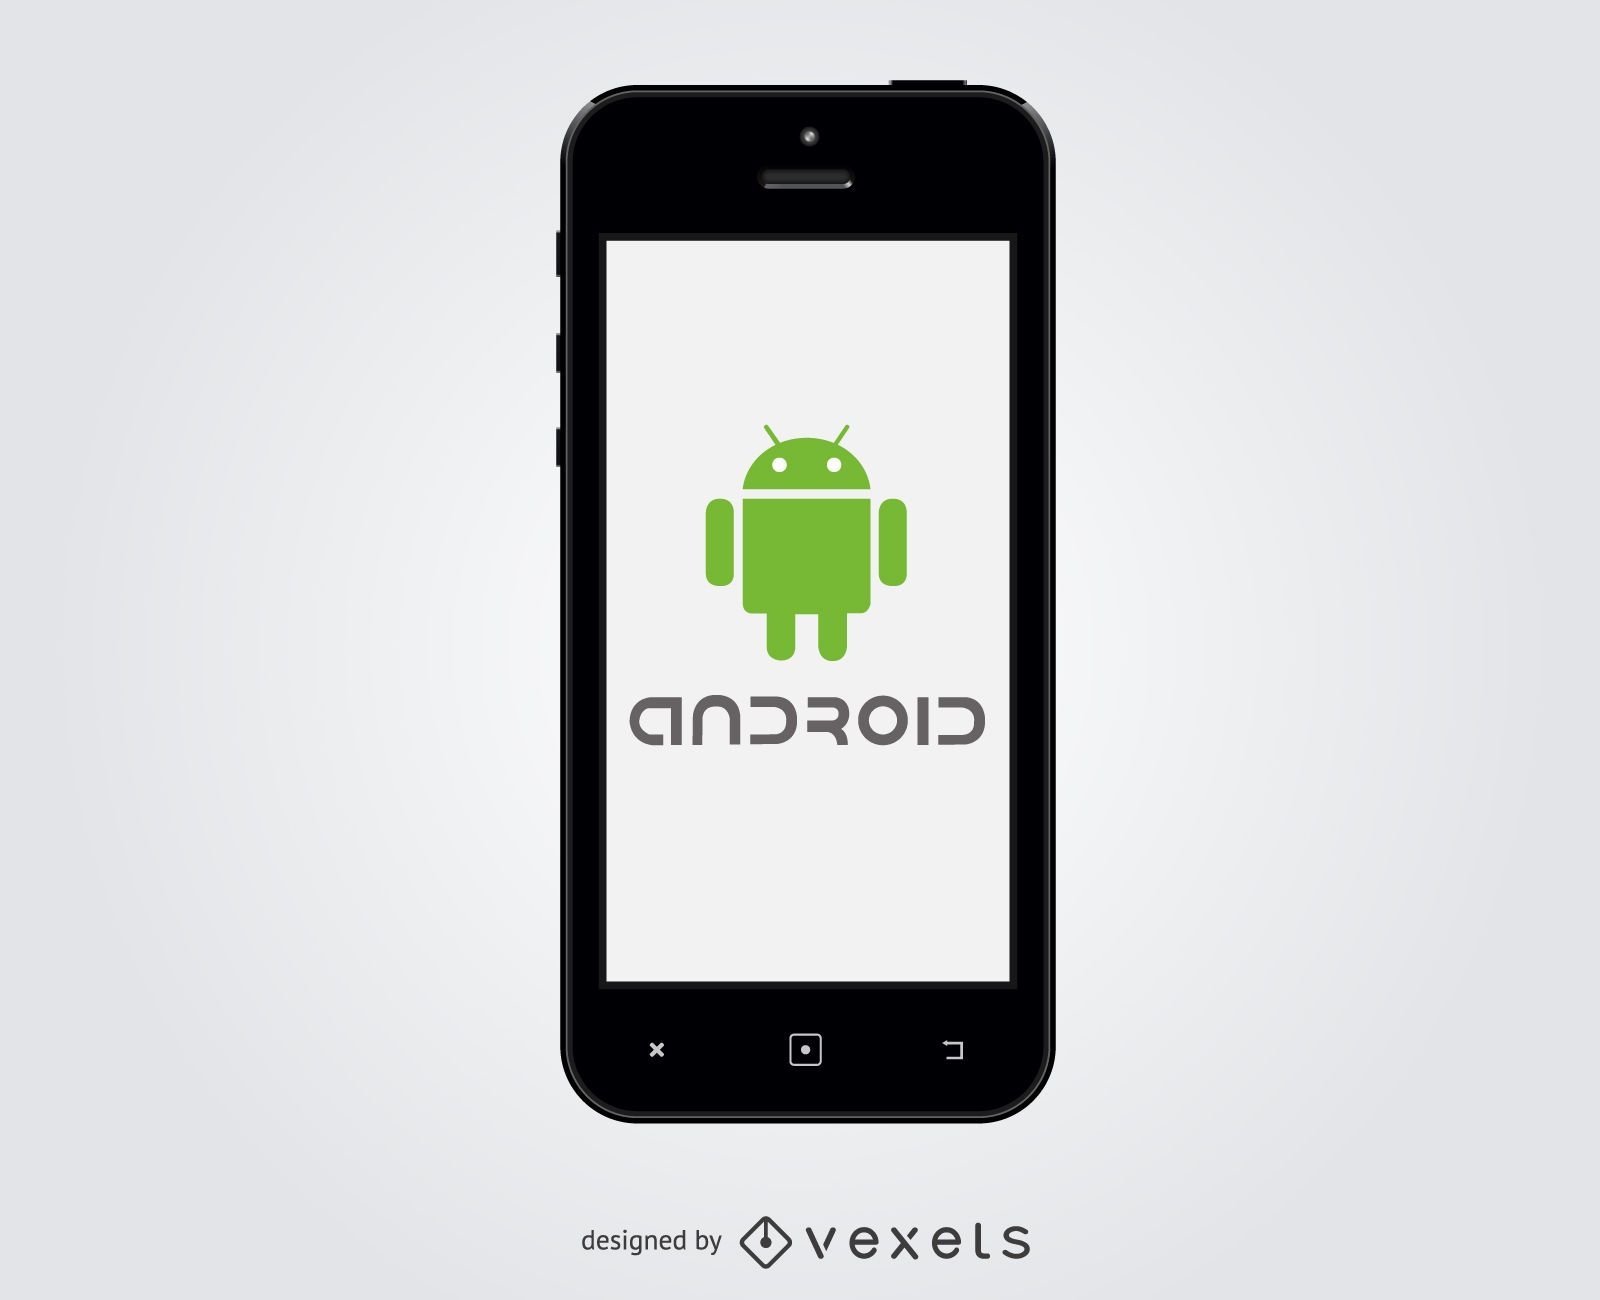 Logotipo de Android dentro del tel?fono inteligente